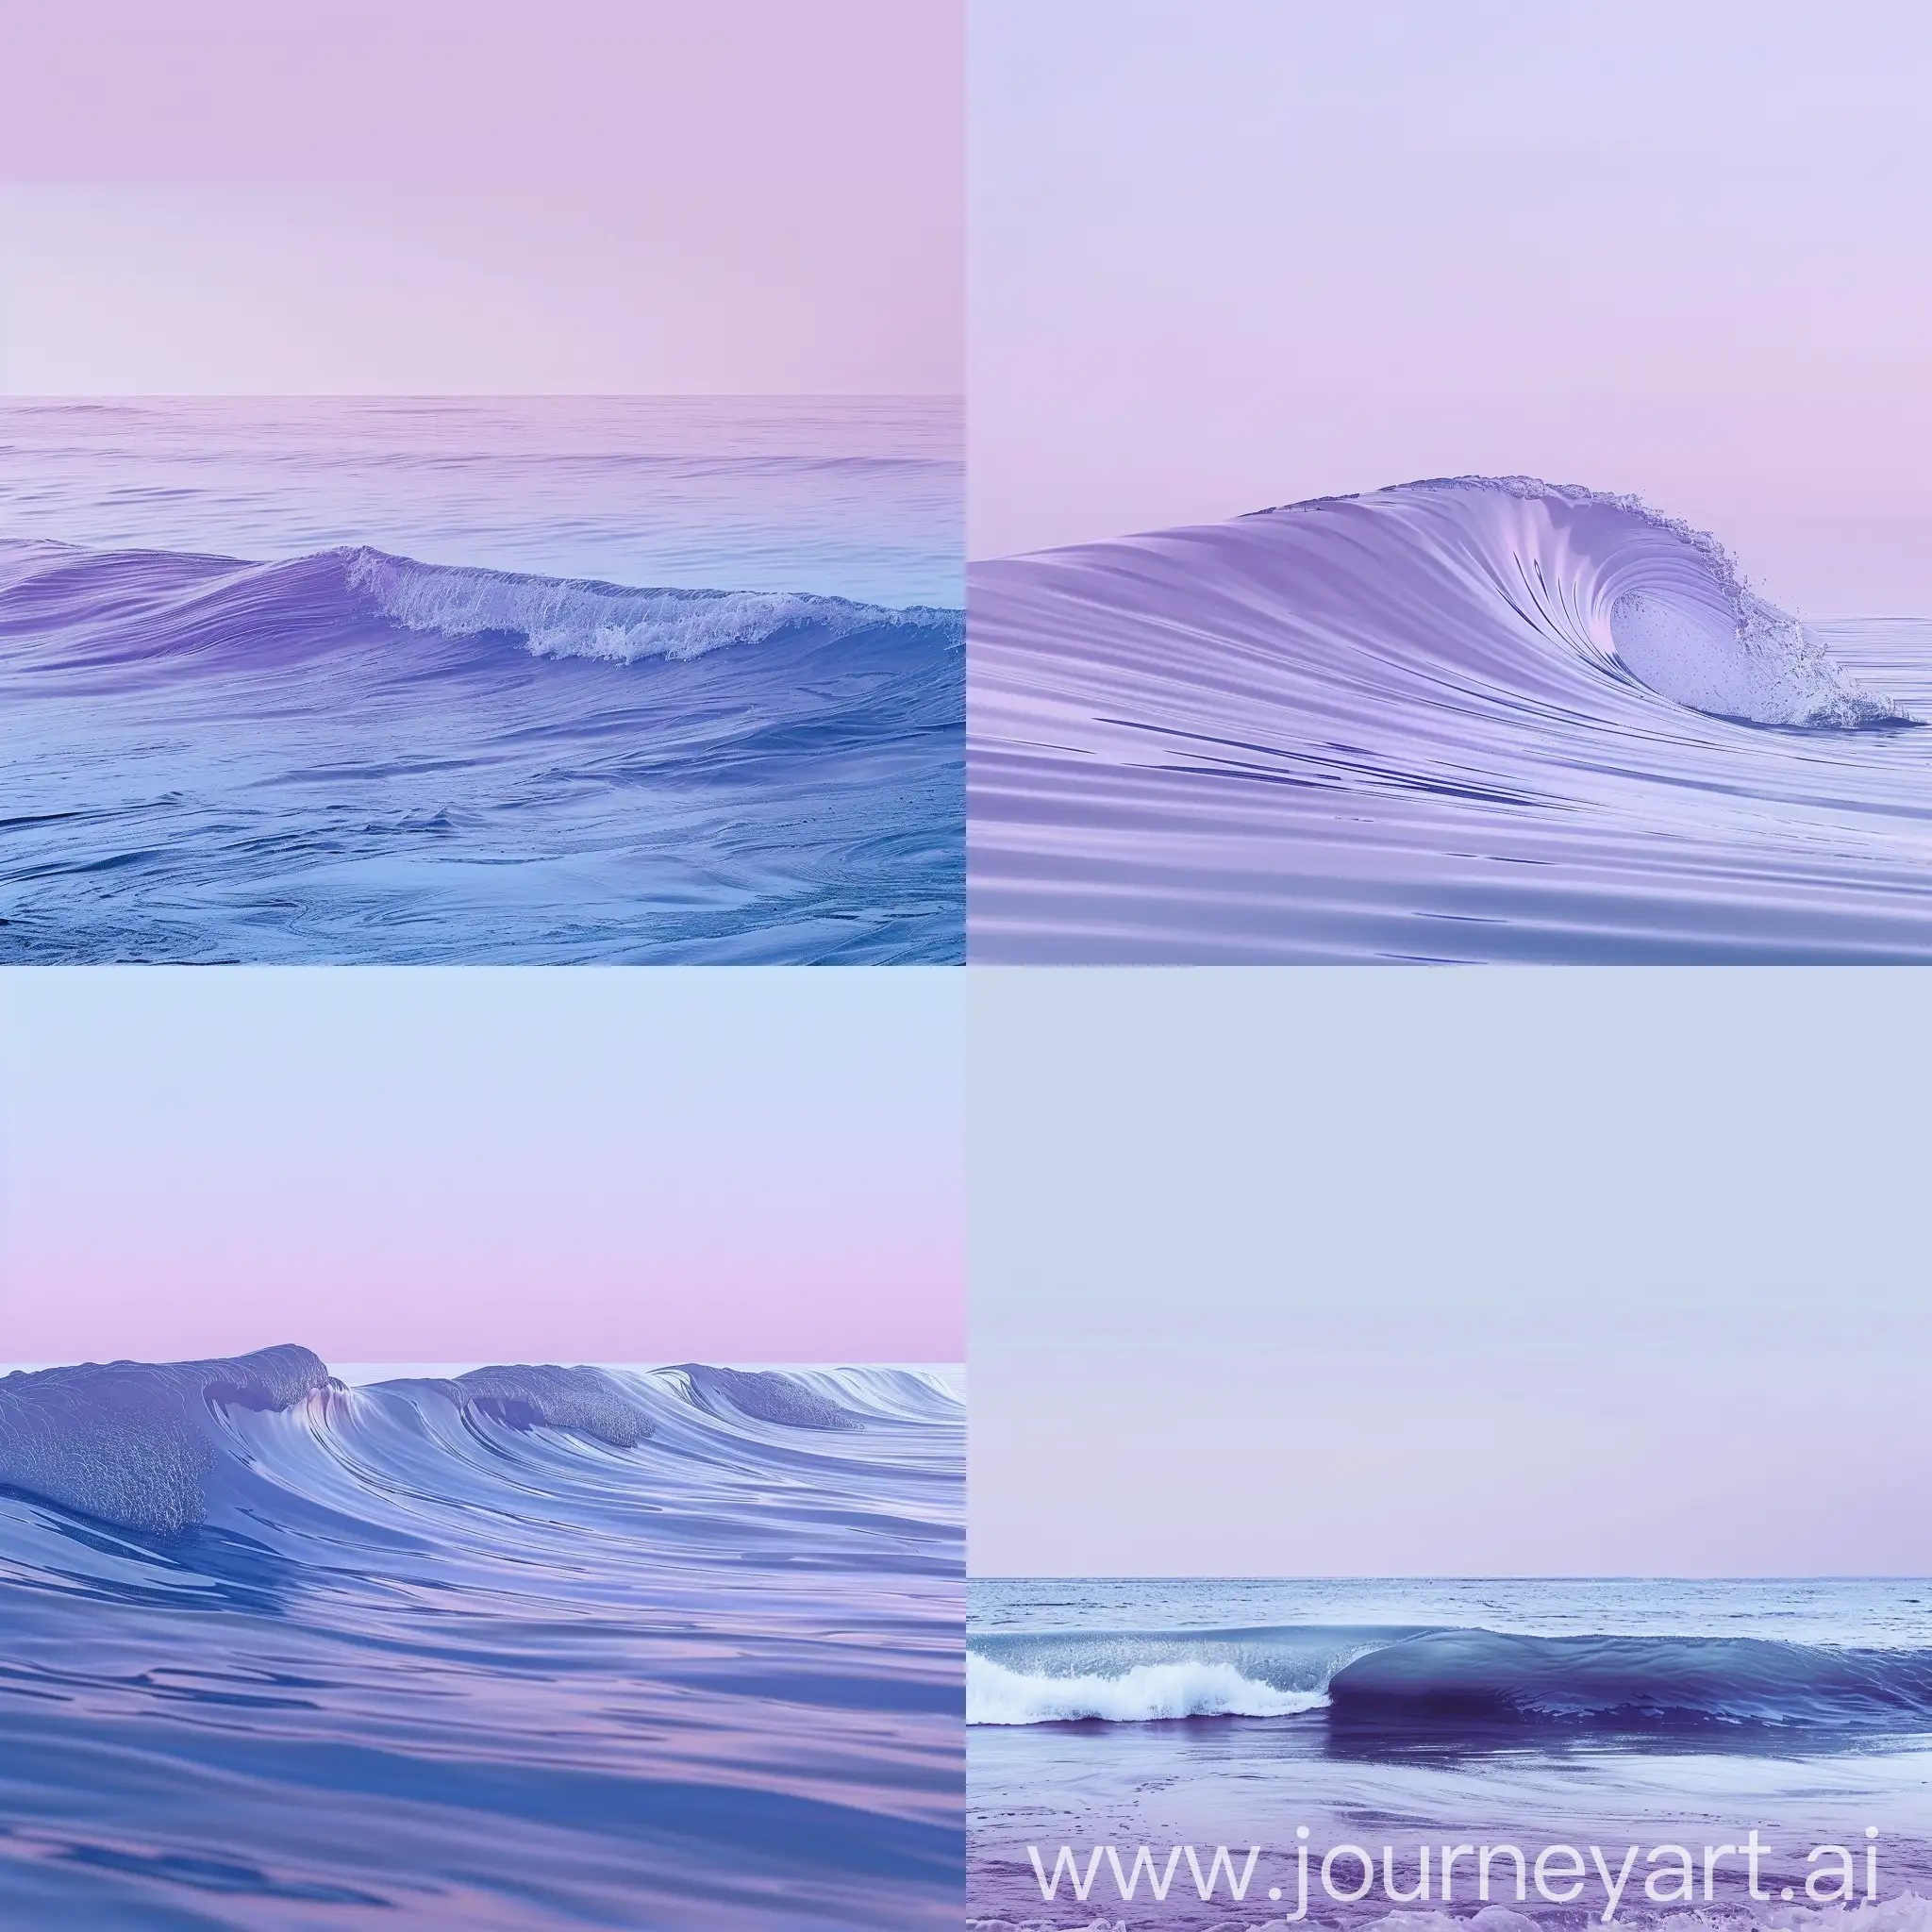 Фон для создания странице на сайте - лавандовое сиреневый, с легким баклажаном, 2-й цвет синий, как синий цвет морской волны во время штиля посреди дня